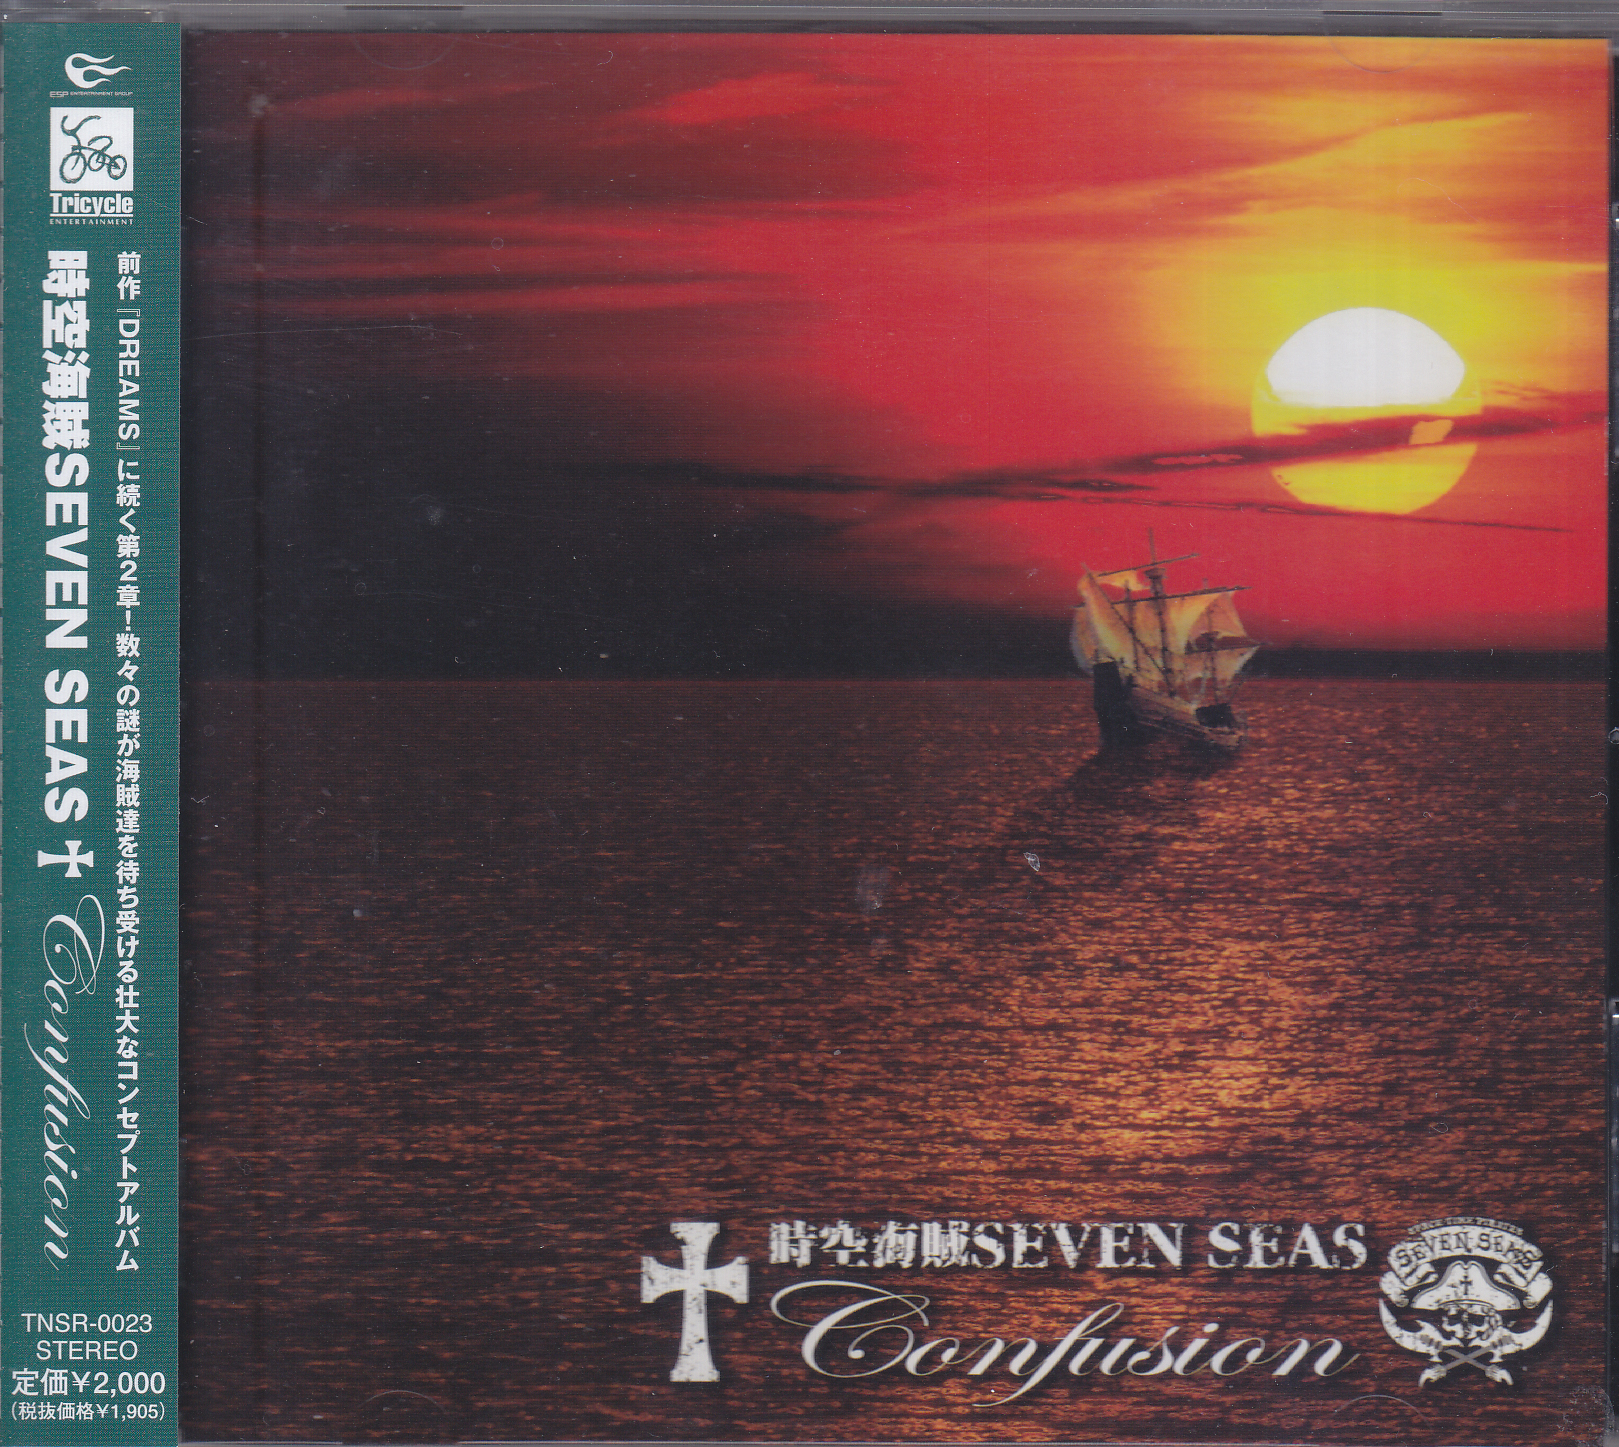 時空海賊 SEVEN SEAS ( ジクウカイゾクセブンシーズ )  の CD CONFUSION